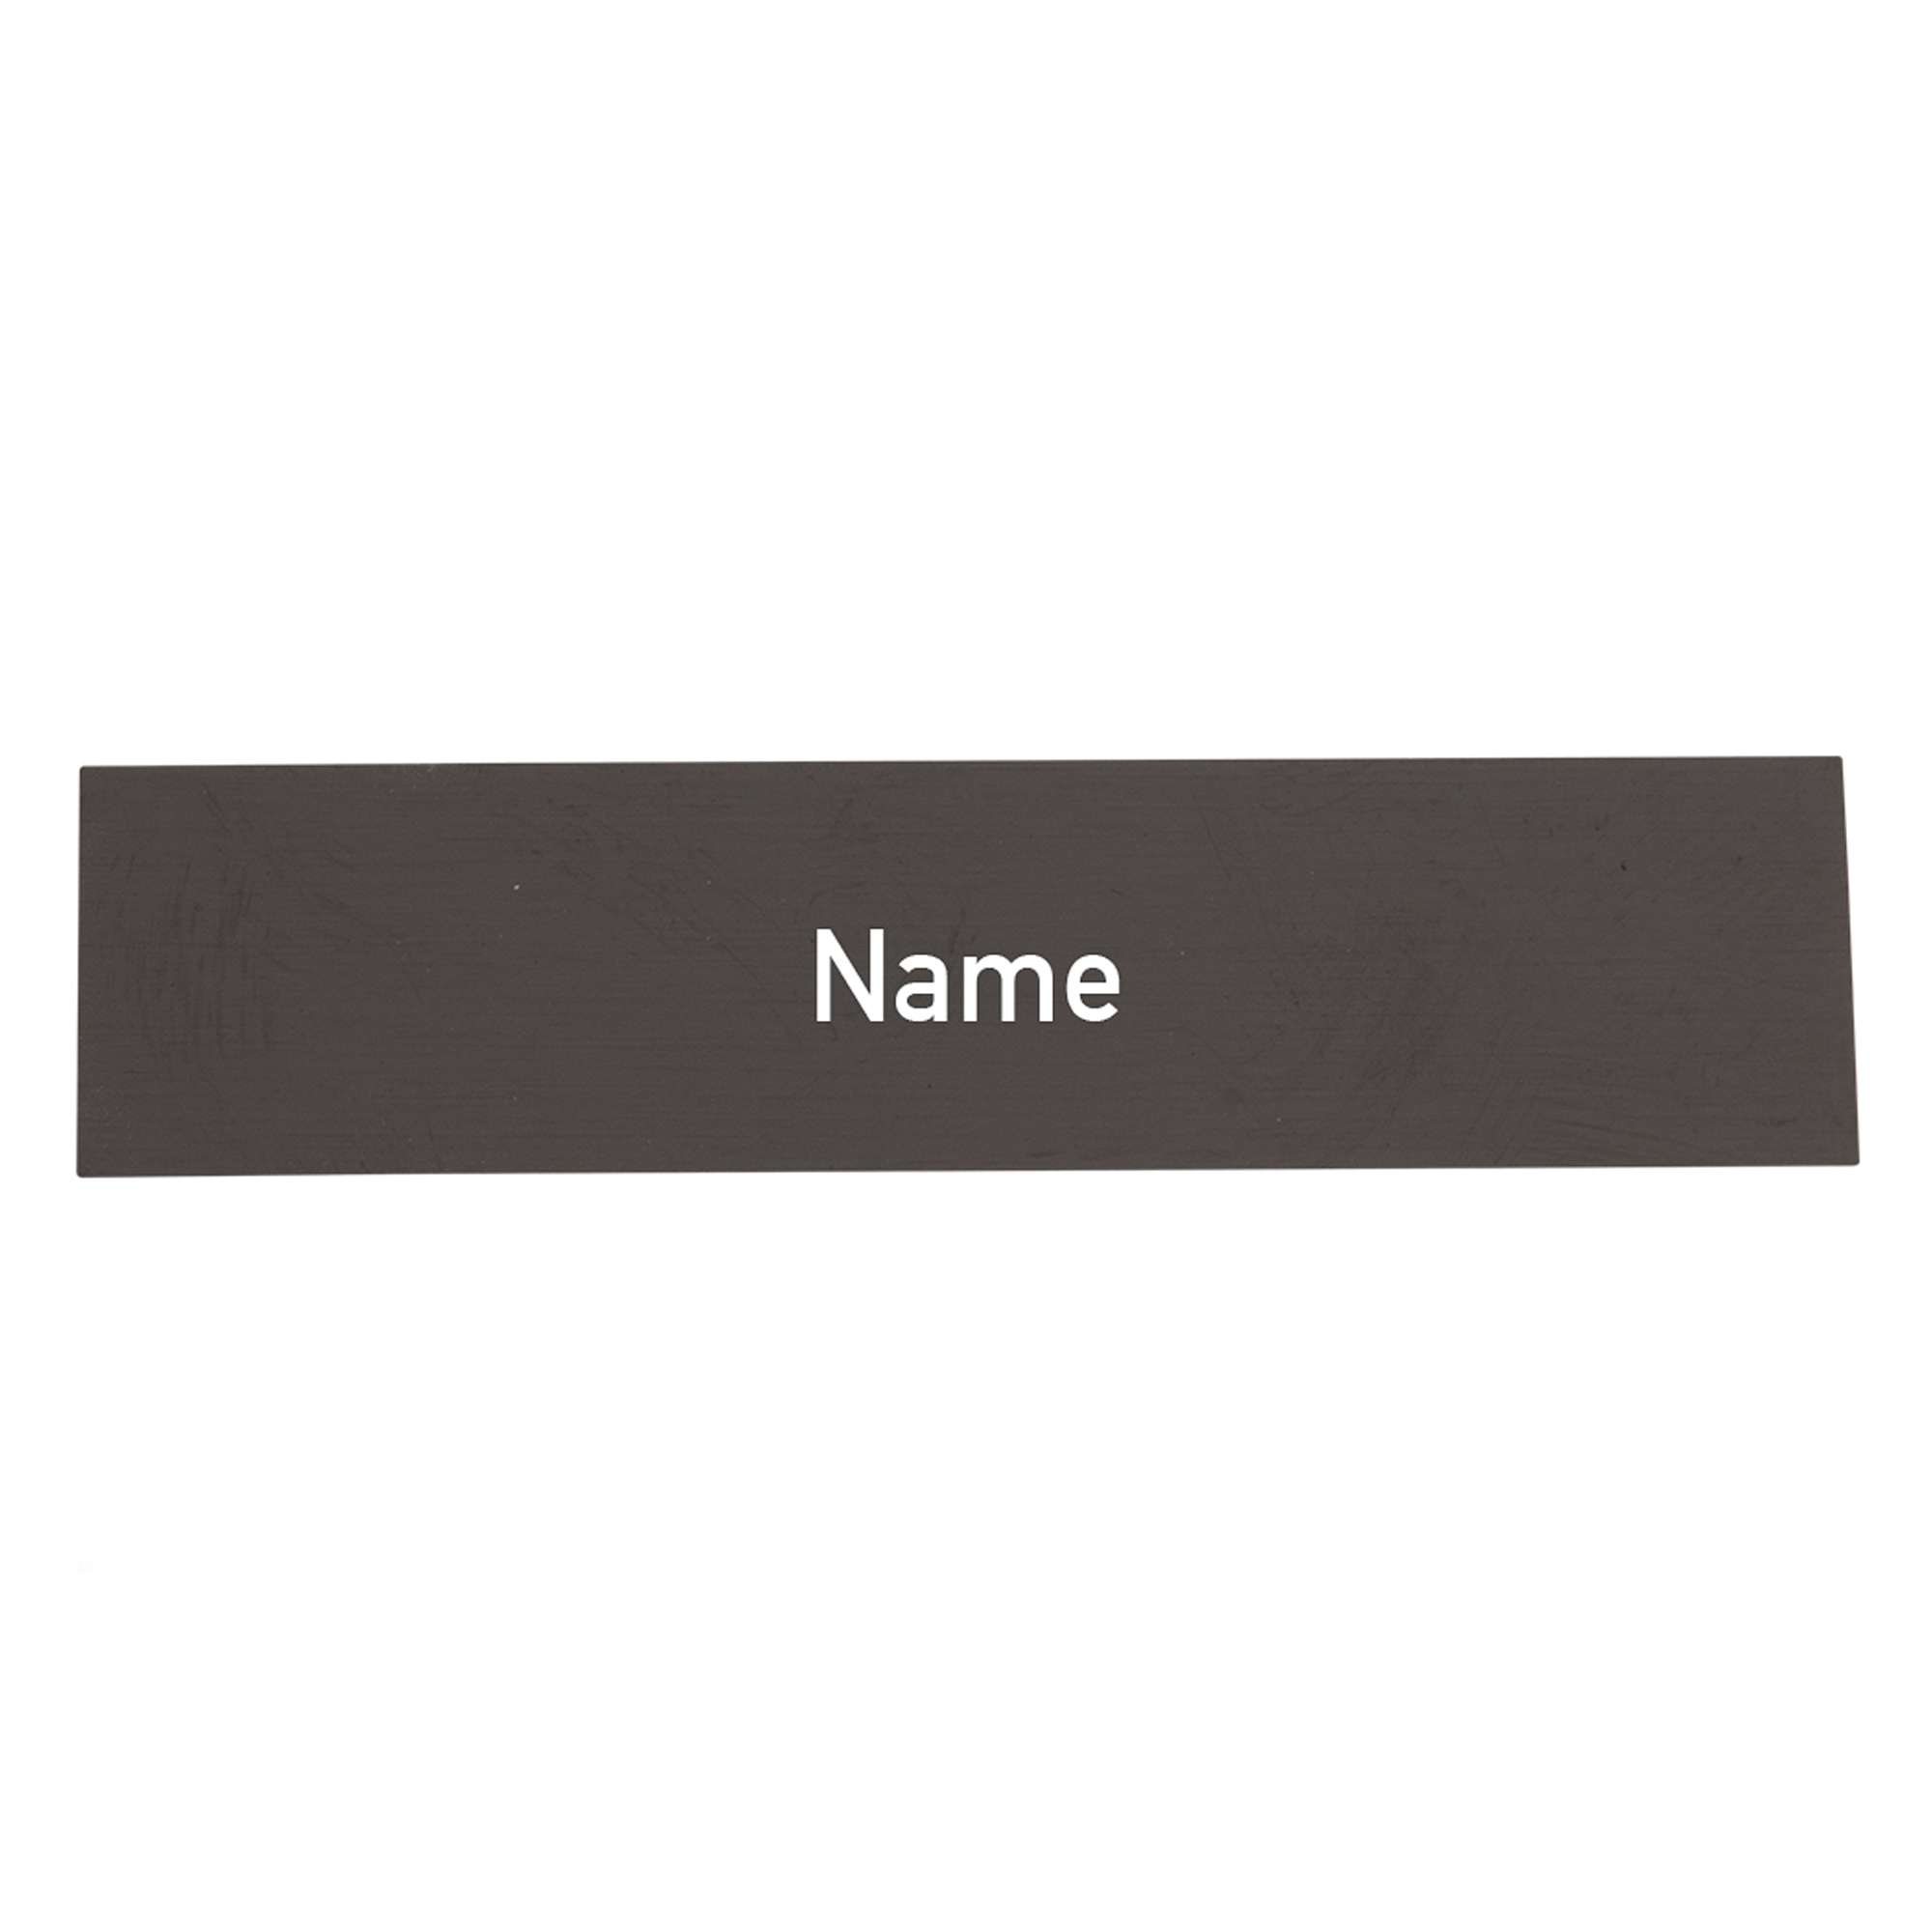 Namensschild-Einlage für Module mit Gravur, weiße Schrift / schwarzer Hintergrund